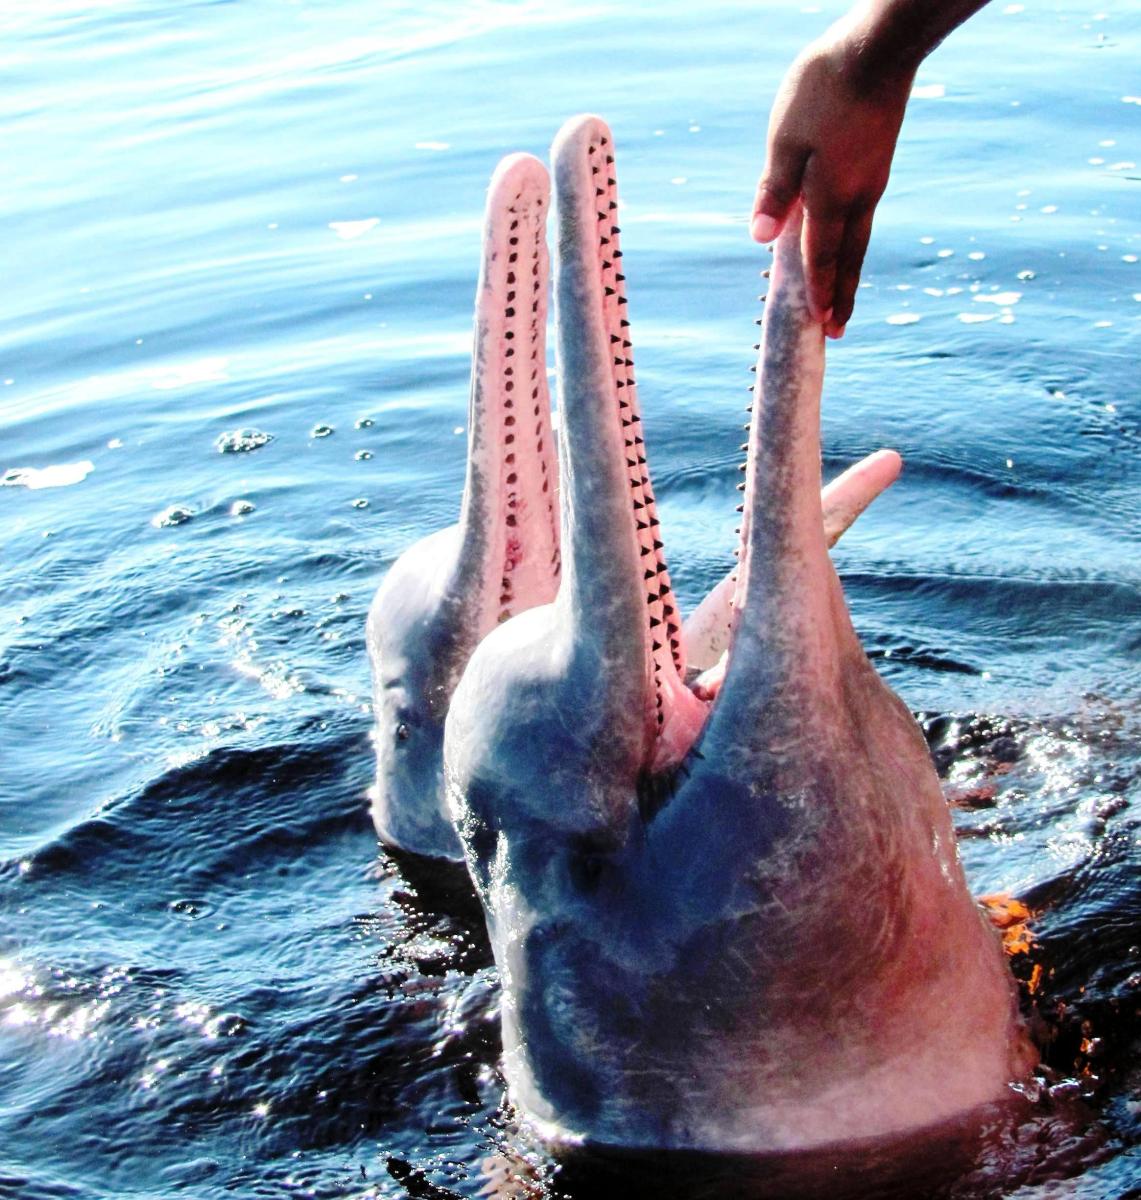 Oblíbená aktivita Vojtěcha Alberta Slámy - plavání s růžovými říčními delfíny v Amazonii